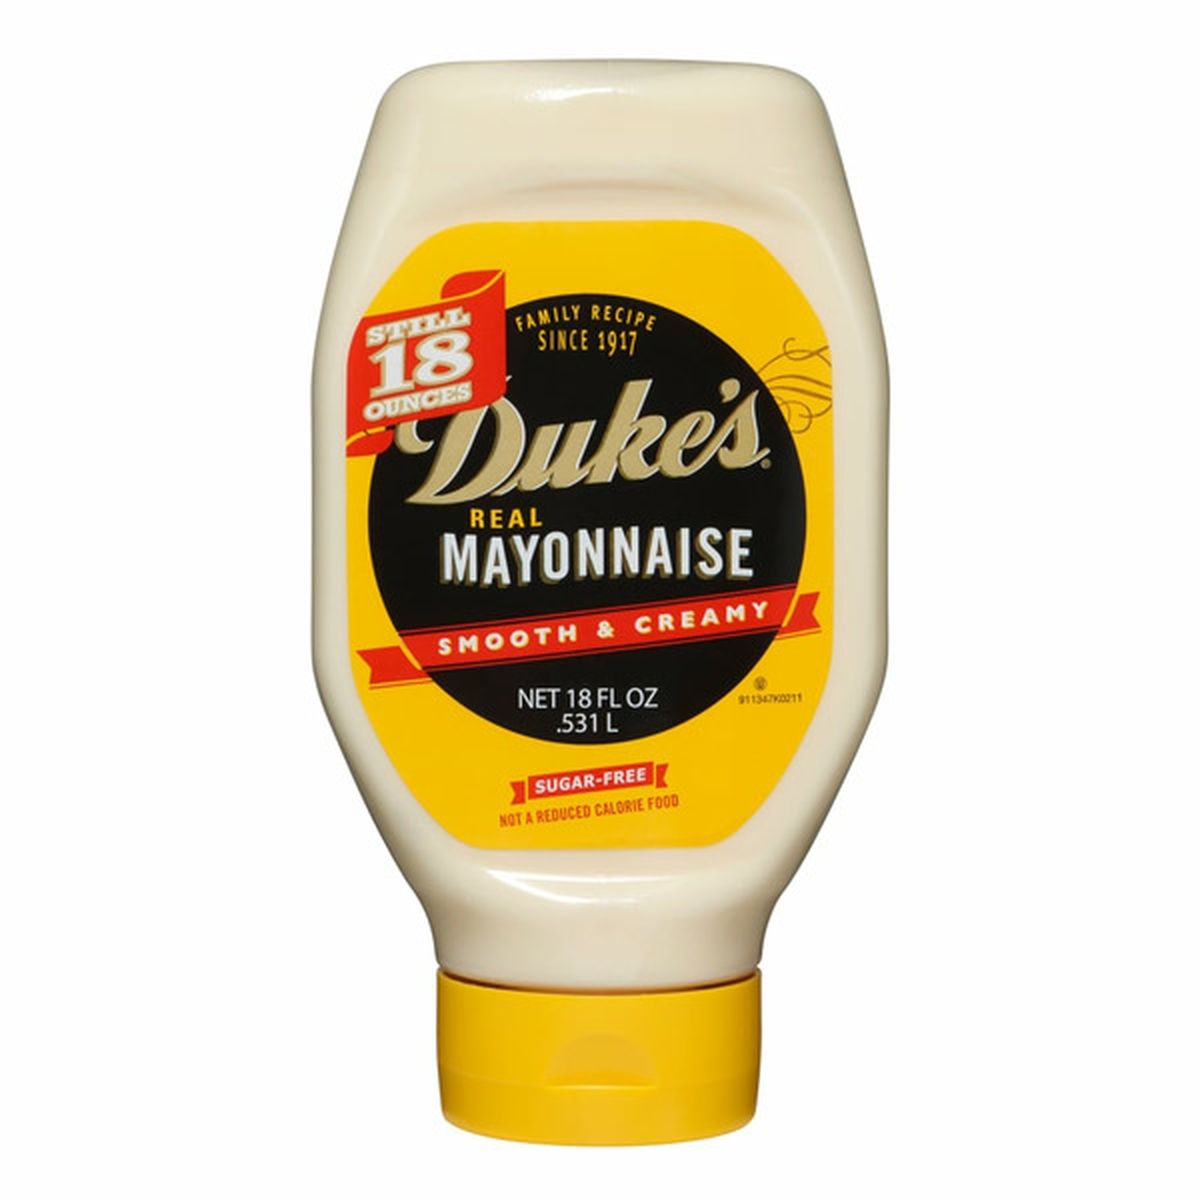 Hellmann's Real Mayonnaise Real Mayo, 36 oz